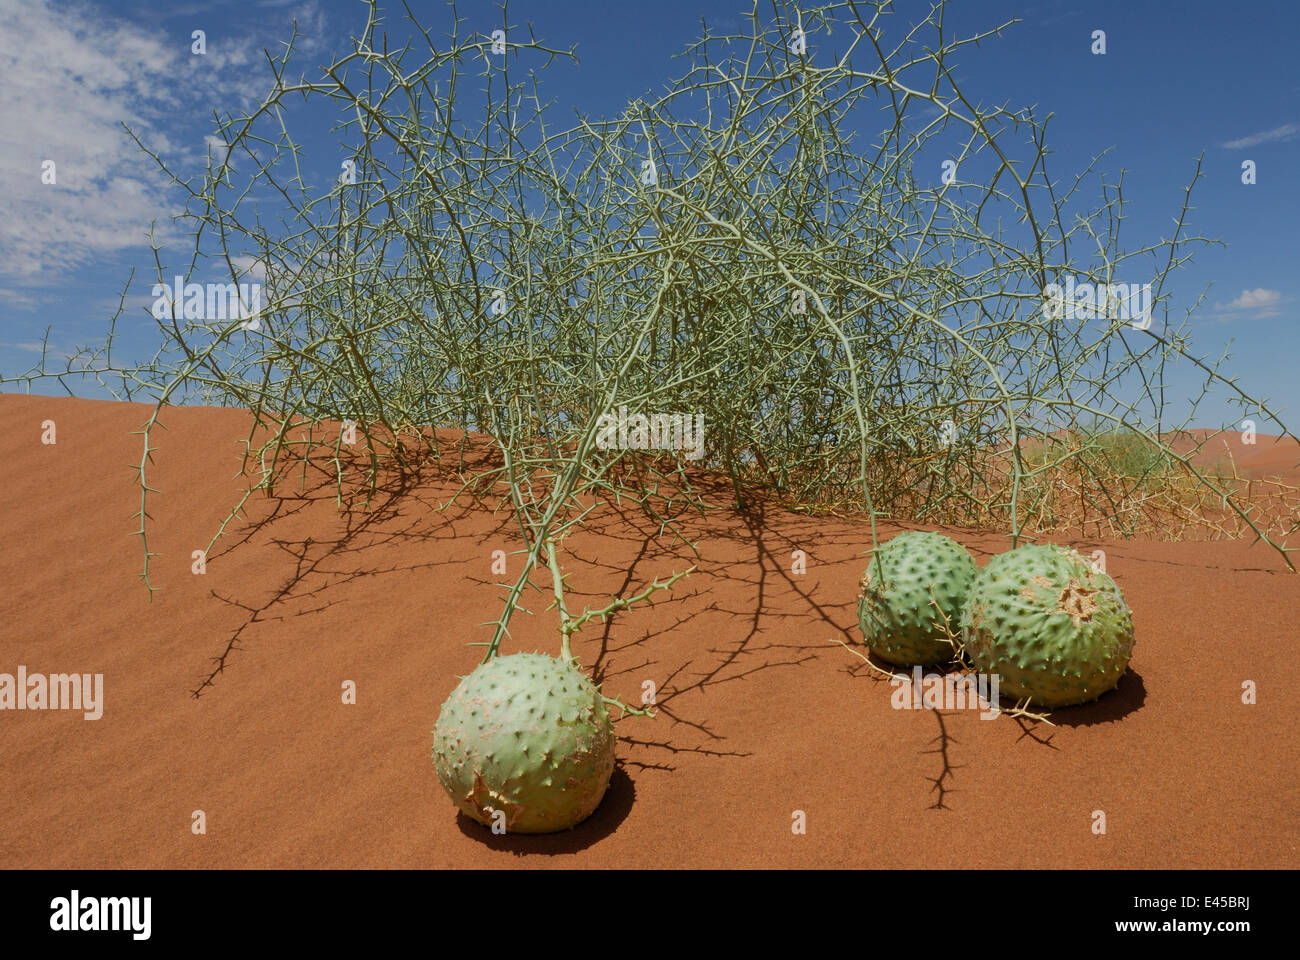 Nara melons (Acanthosicyos horrida) on sand dune, Namib Naukluft NP, Namib desert, Namibia Stock Photo